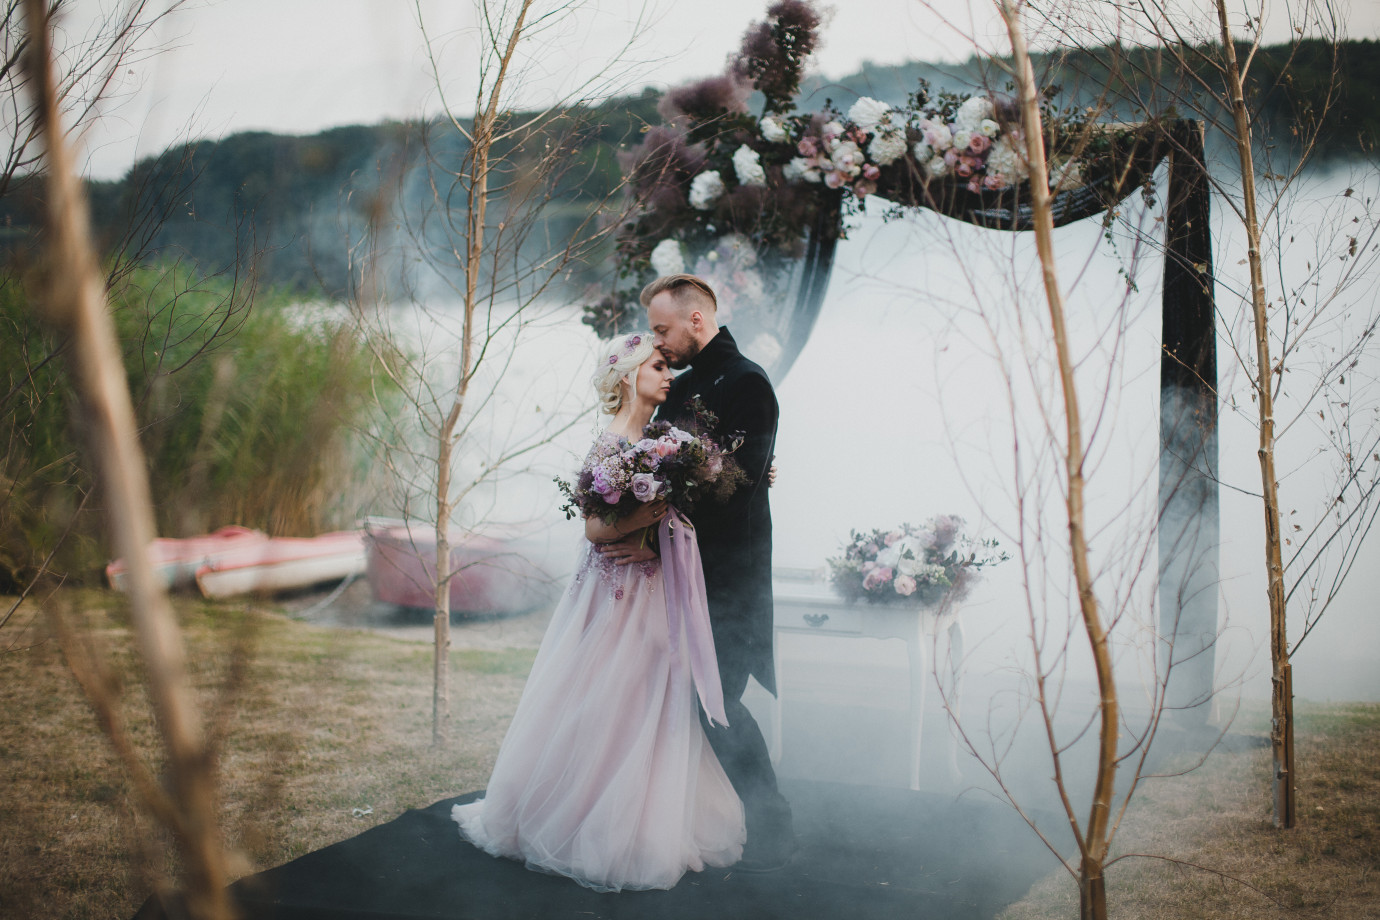 fotograf  mogyliuk portfolio zdjecia slubne inspiracje wesele plener slubny sesja slubna